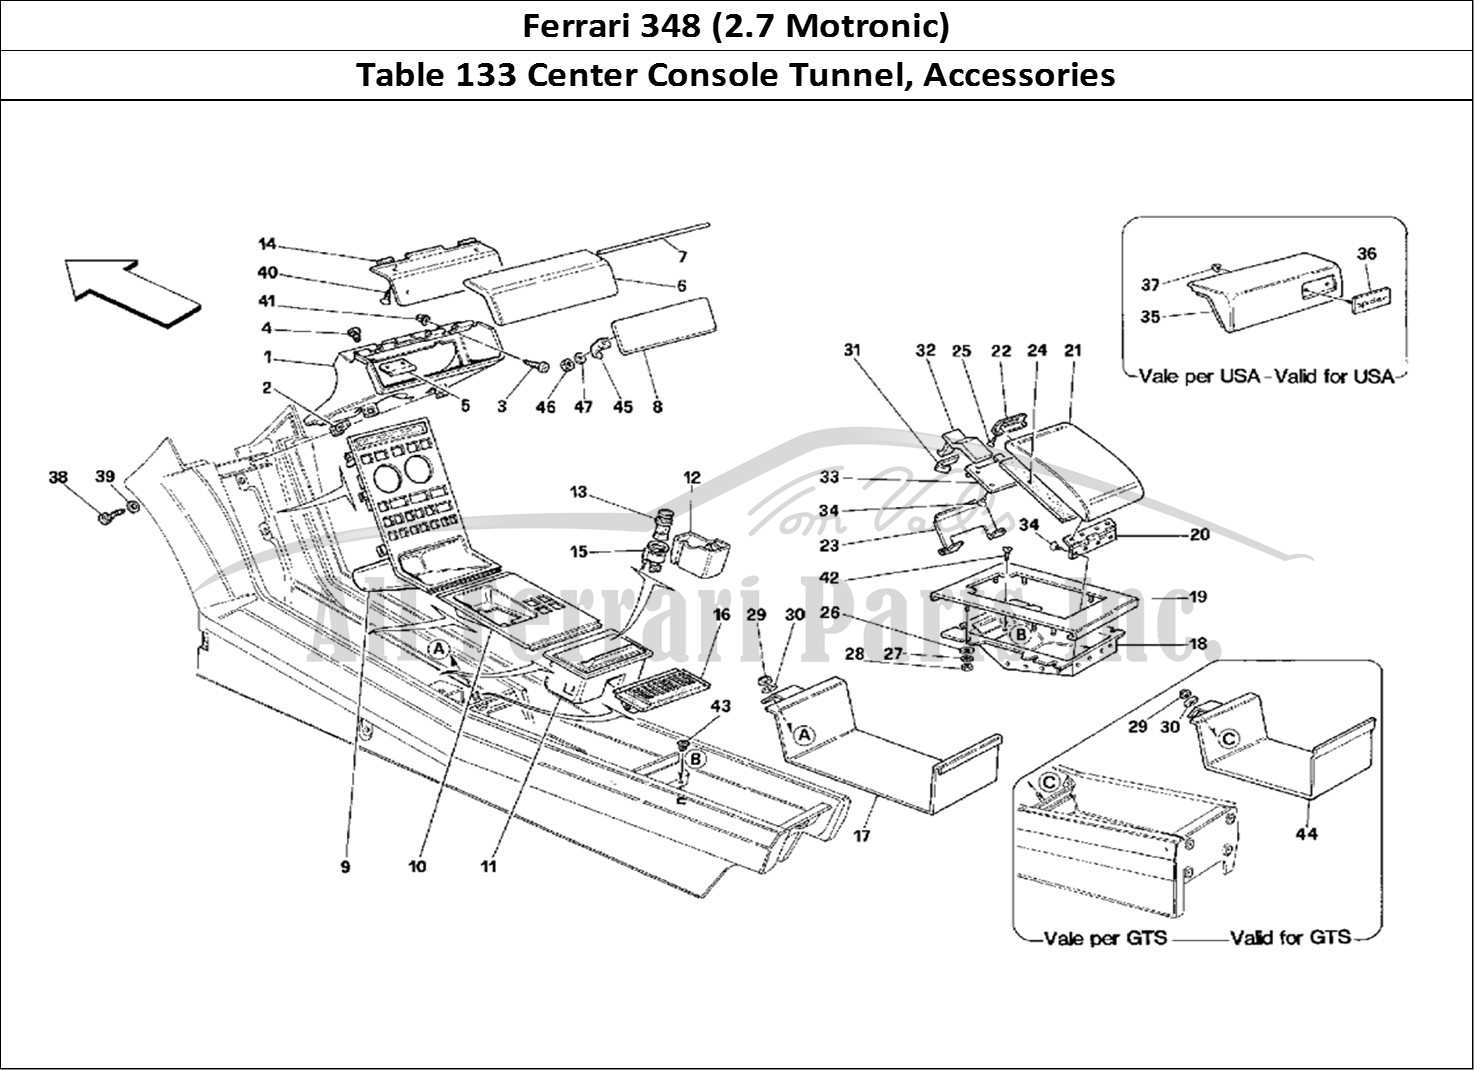 Ferrari Parts Ferrari 348 (2.7 Motronic) Page 133 Tunnel - Accessories